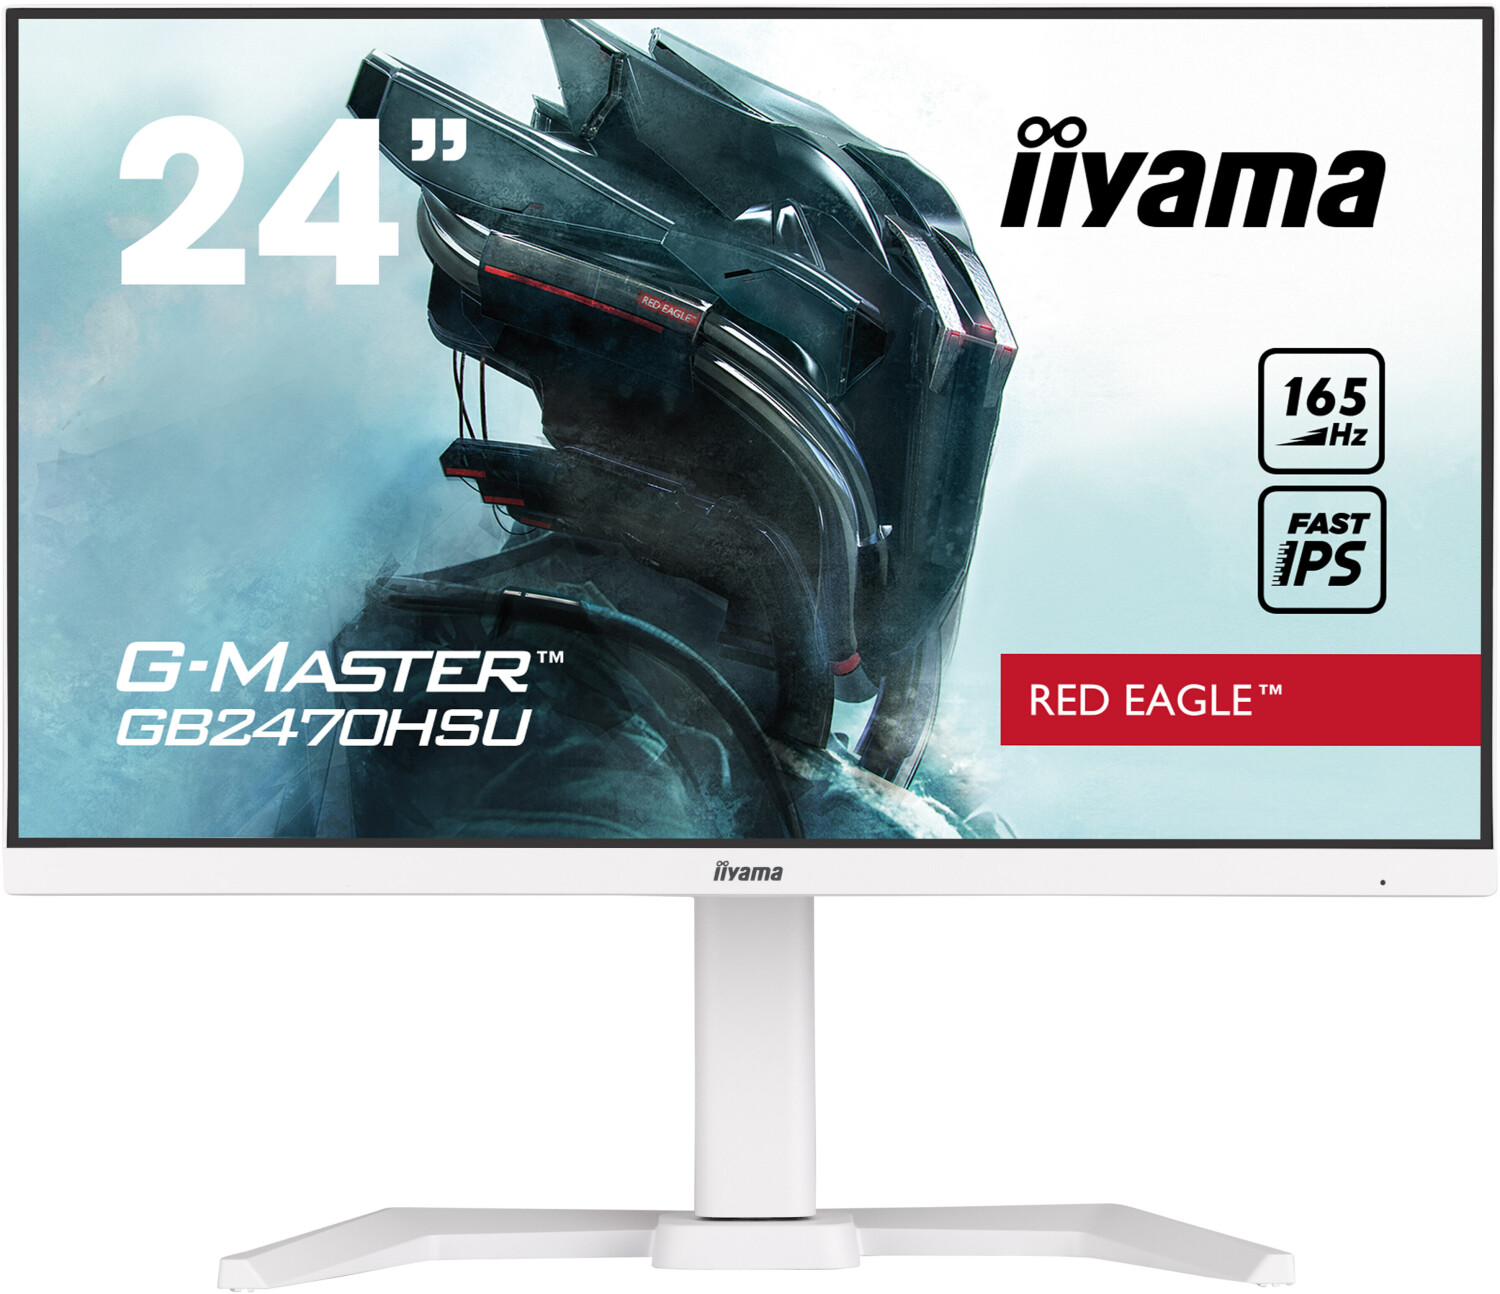 Iiyama G-Master GB2470HSU-W5 -  23,8 Zoll  1.920 x 1.080 Pixel  165 Hz  IPS  16:9  Reaktionszeit 0,8 ms  1.100:1  Helligkeit 250 cd/m²  HDMI  Display Port  mit Lautsprecher [Energieklasse E] (GB2470HSU-W5)